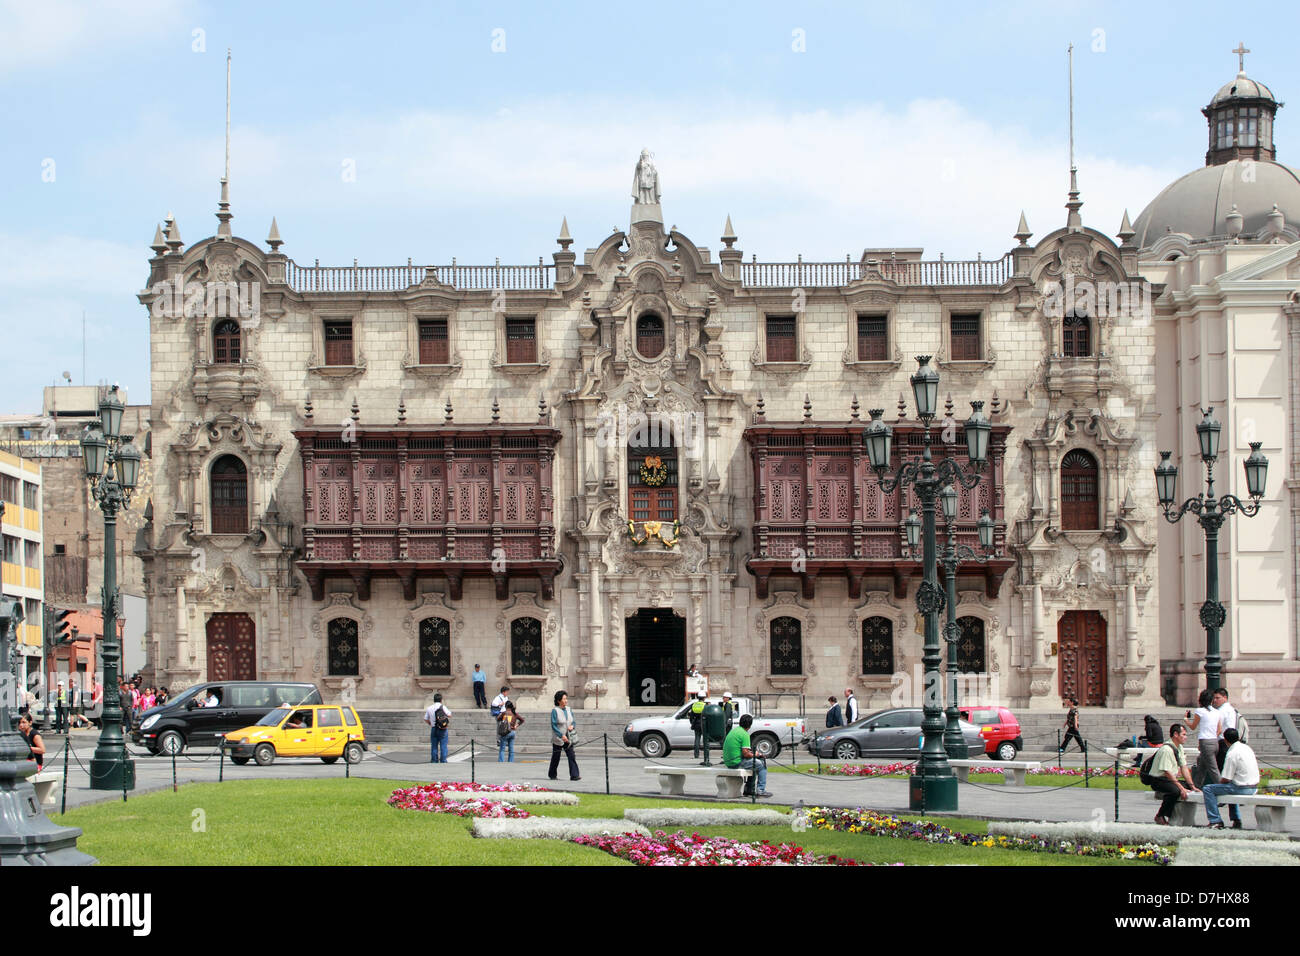 Peru Lima Plaza Mayor or Plaza de Armas Palacio de Arzobispo Archbishop’s Palace Stock Photo